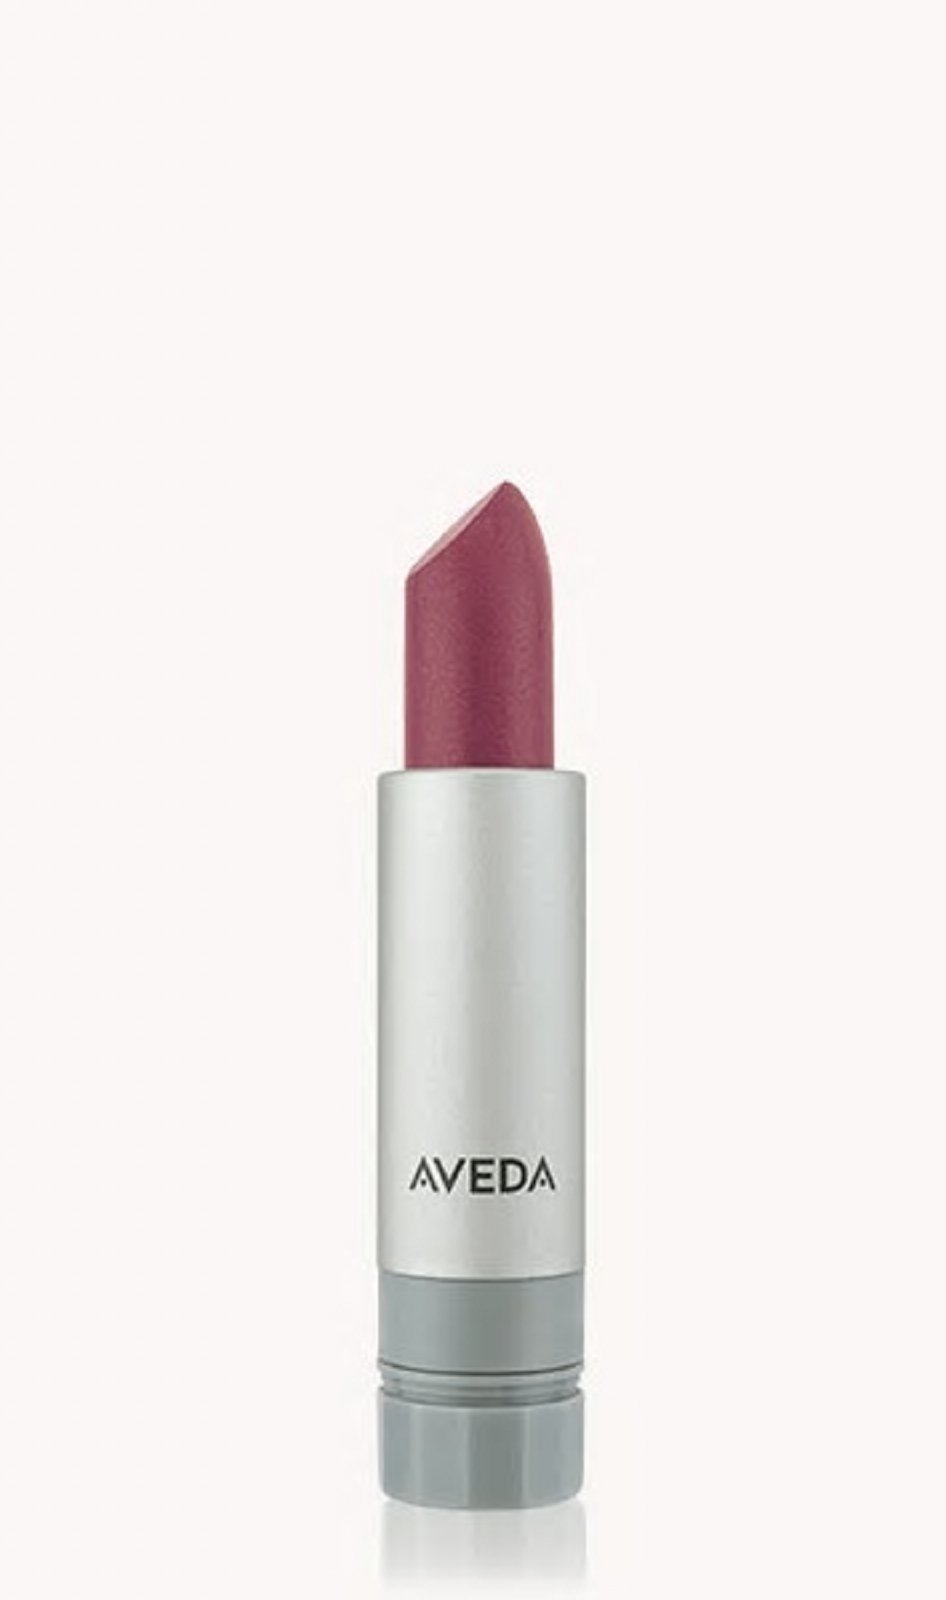 AVEDA new lipstick lip color Sugar Apple 320 Nourish-Mint discontinued